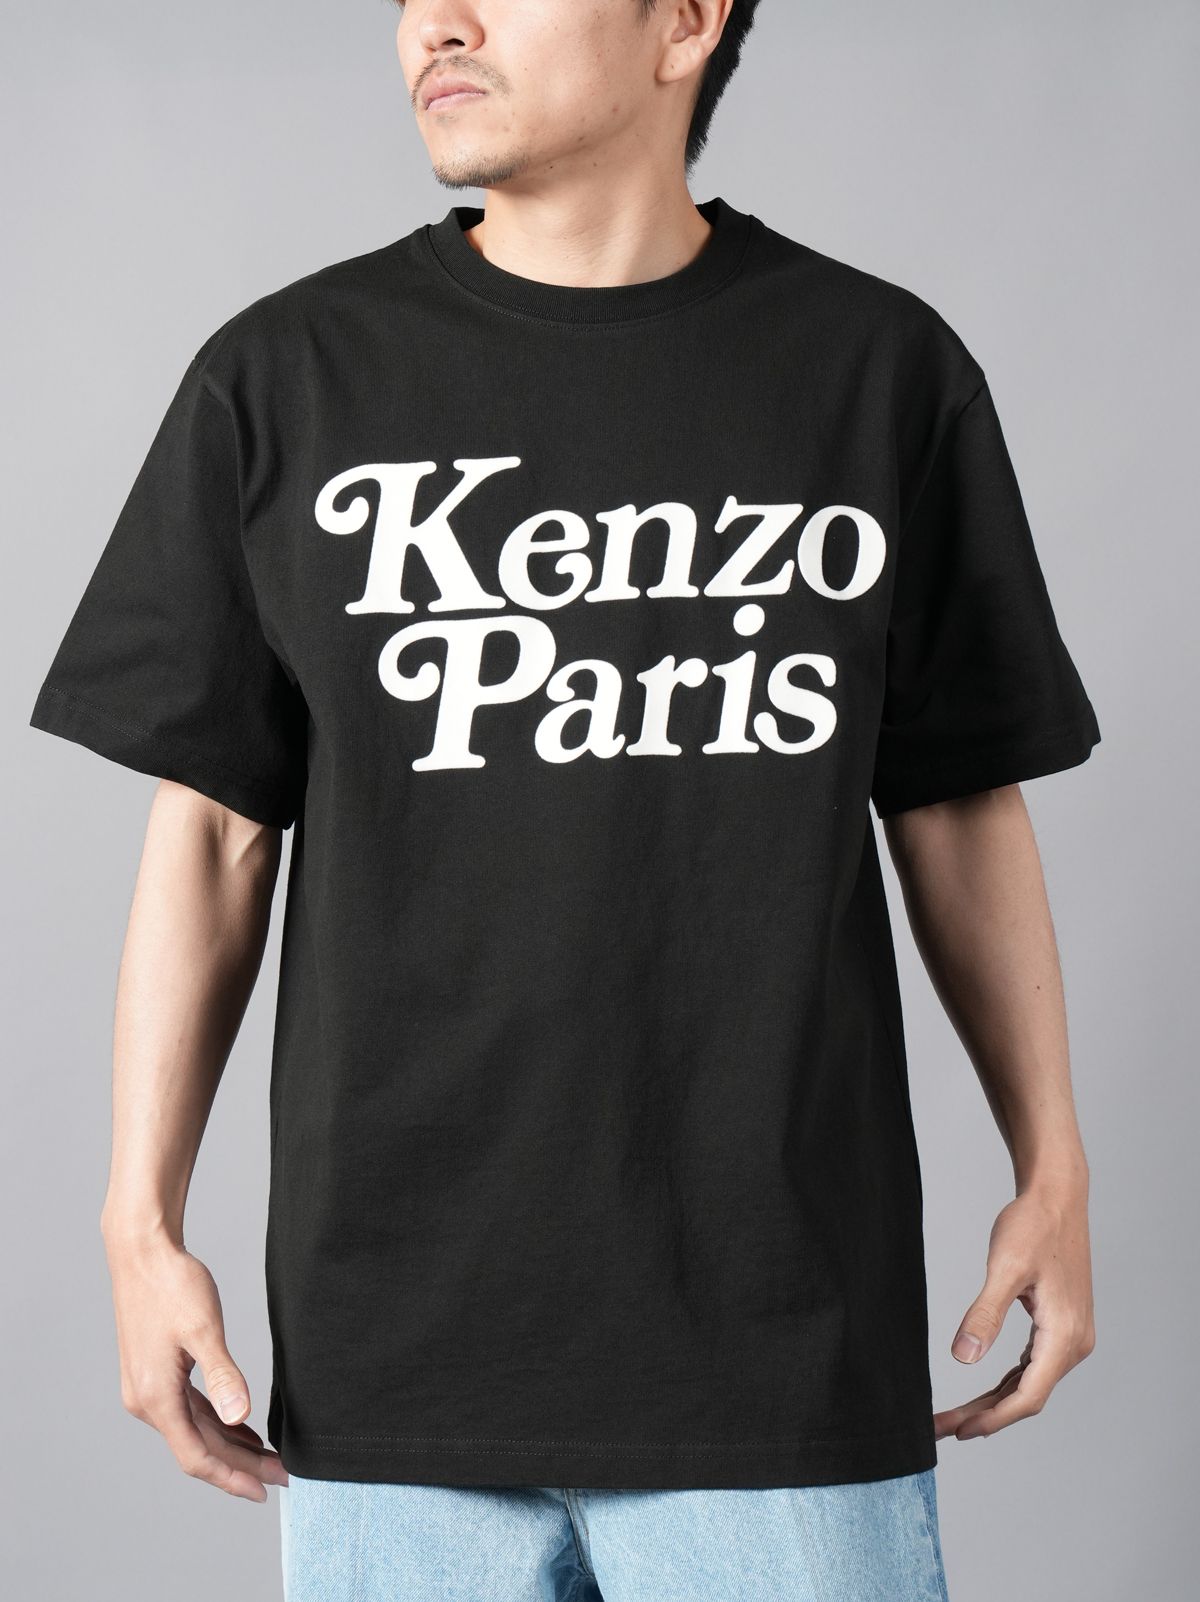 KENZO - 【再入荷】【限定】 KENZO x VERDY / KENZO BY VERDY